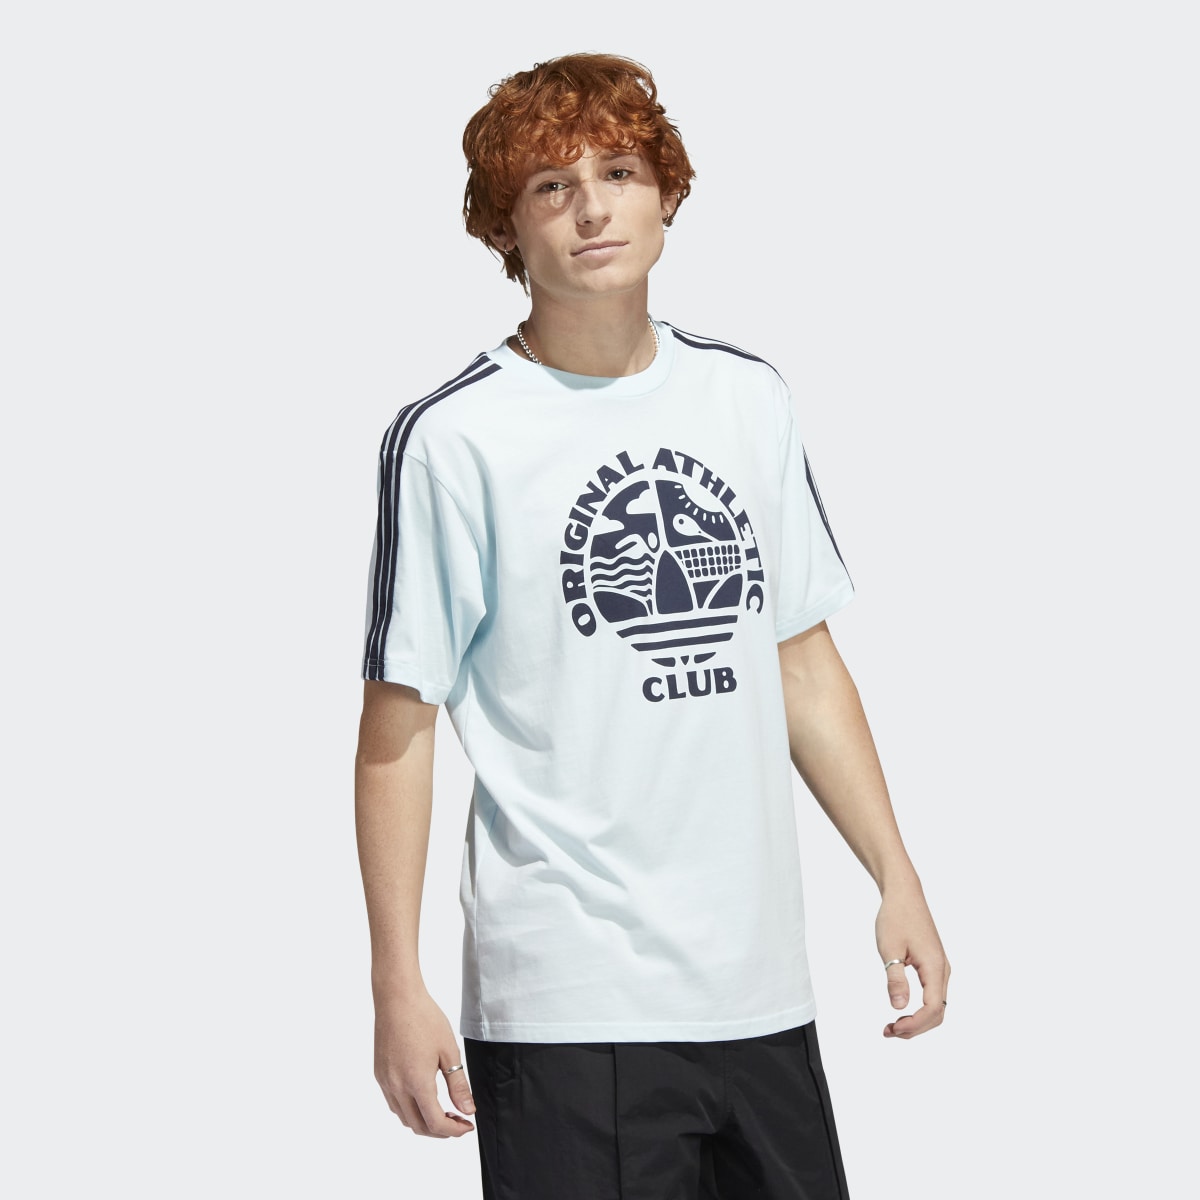 Adidas Original Athletic Club 3-Stripes T-Shirt. 4